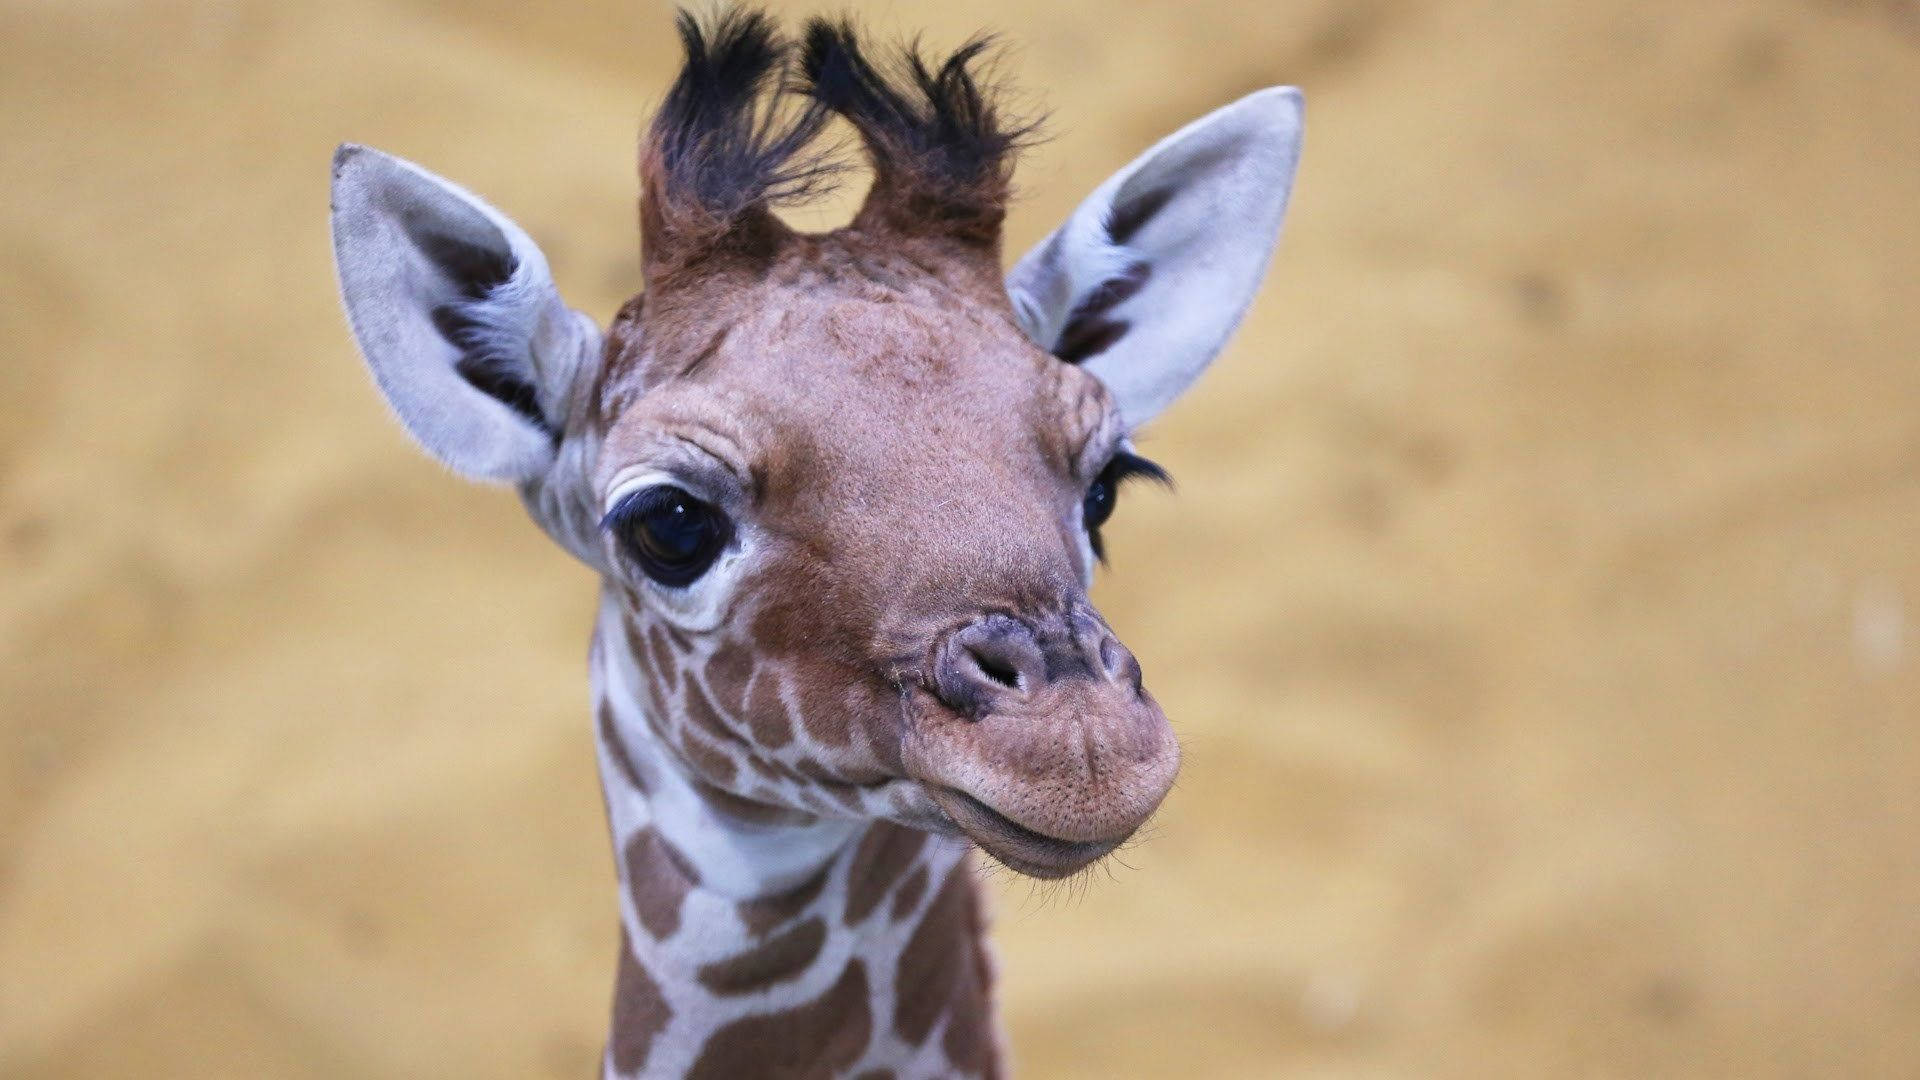 Baby Giraffe Cute Headshot